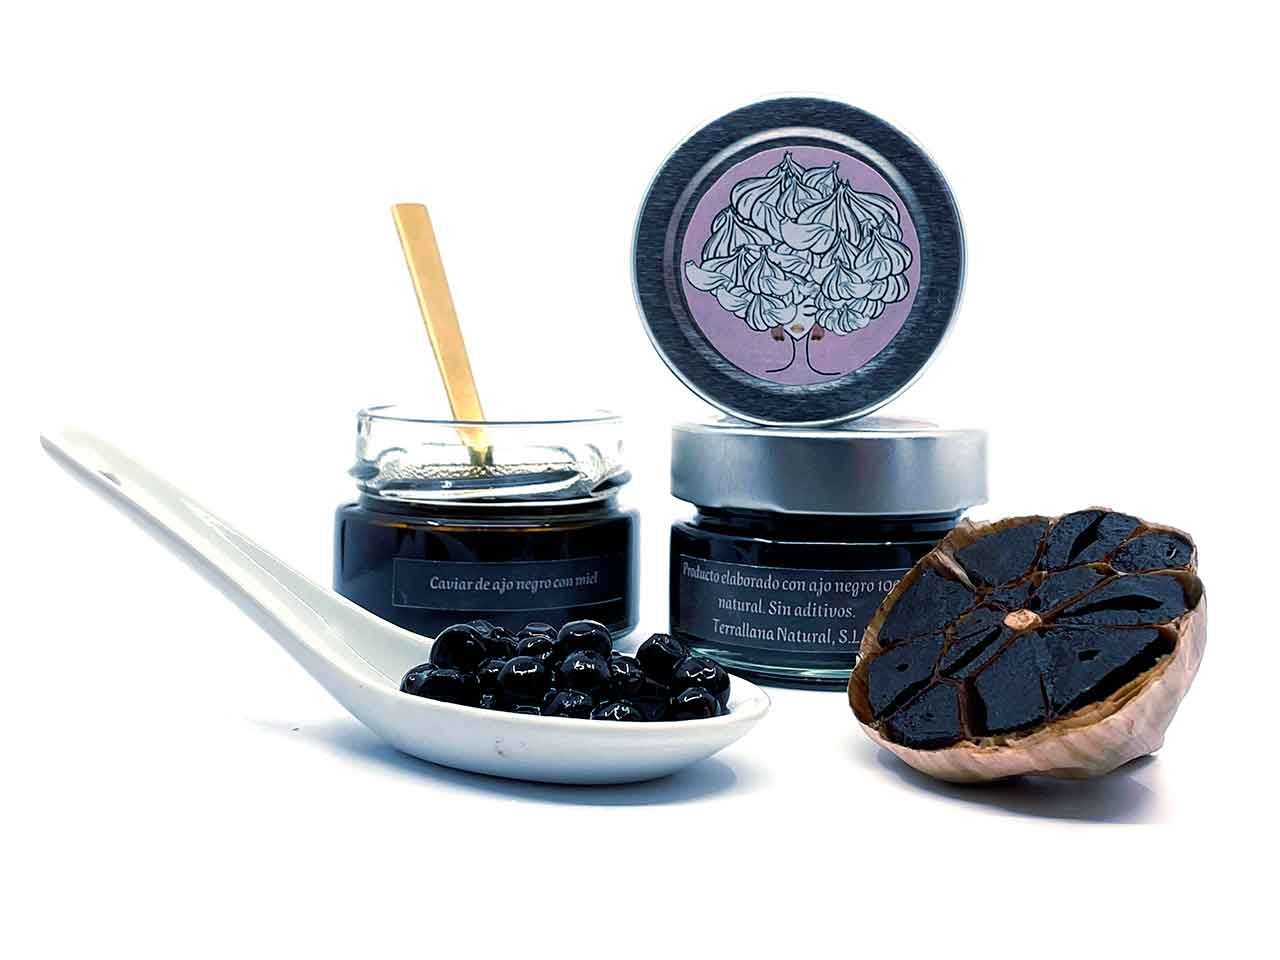 Caviar de ajo negro con miel.